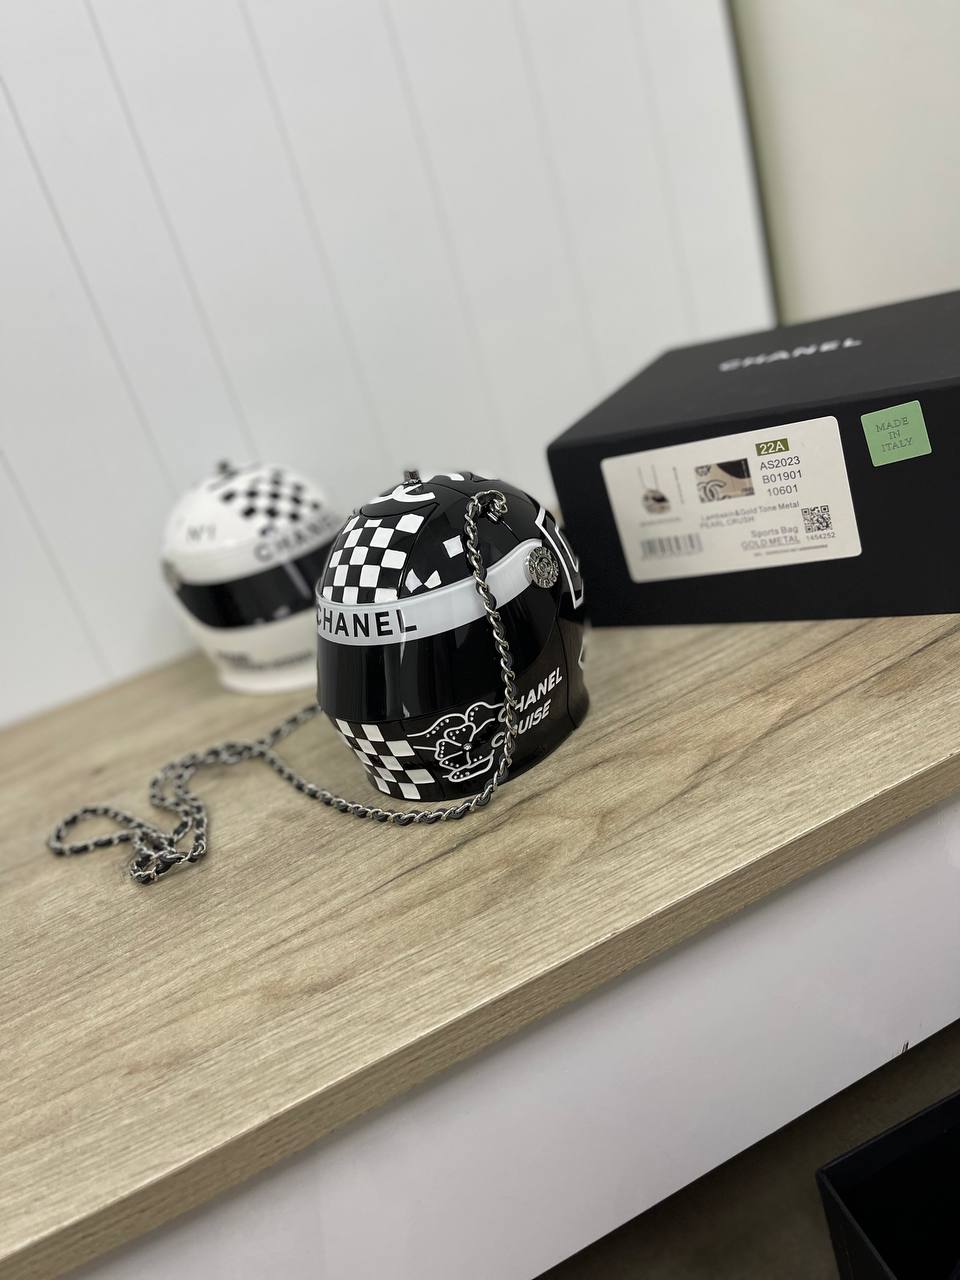 Chanel - Helmet Bag Minauderie Chain Bag Black / White Resin Brand Ne  Auction